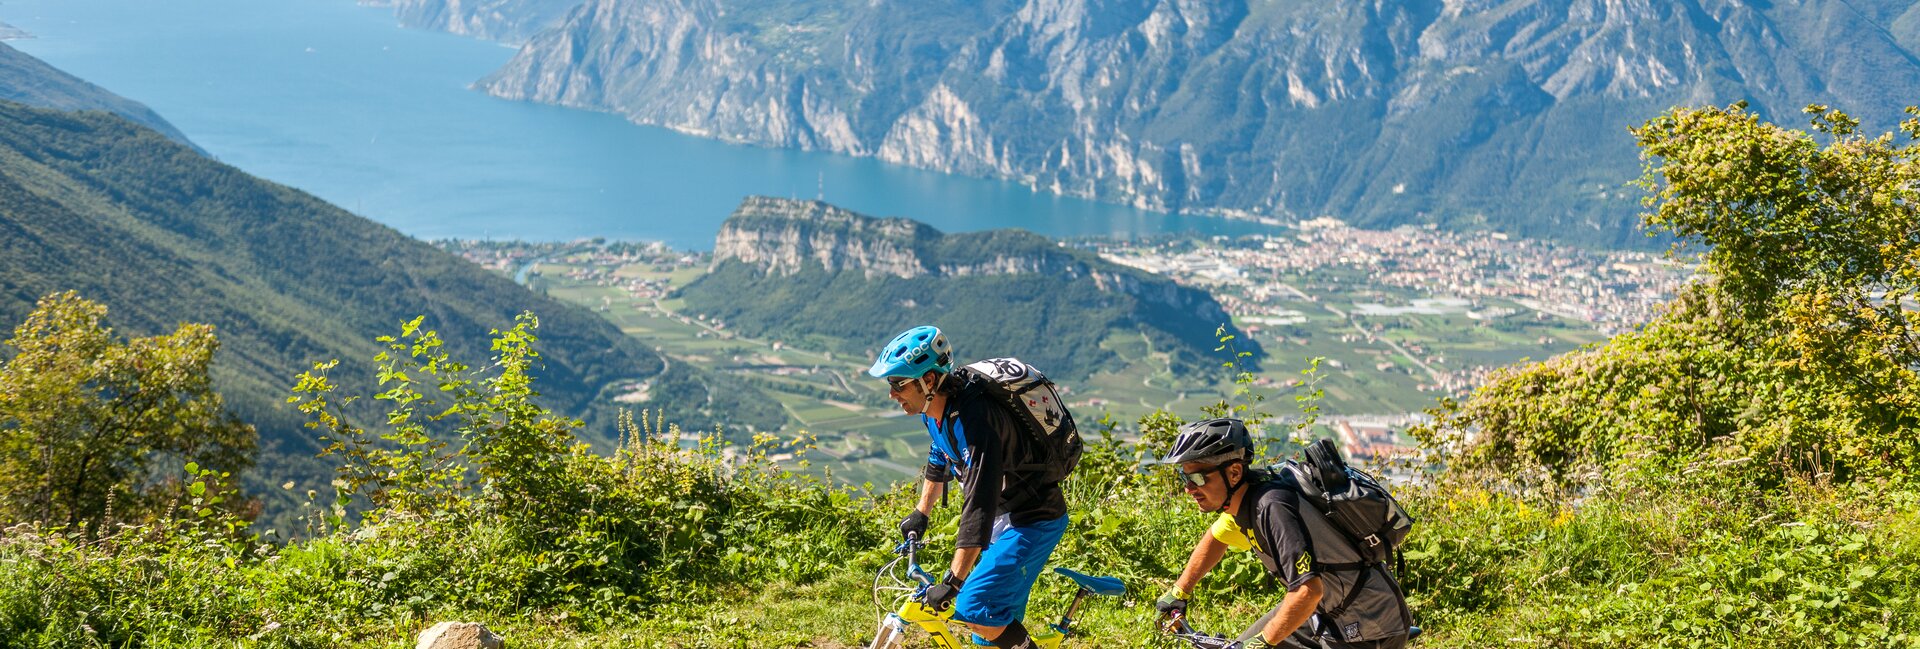 Riva del Garda - Vacanze con la bicicletta - Percorsi MTB